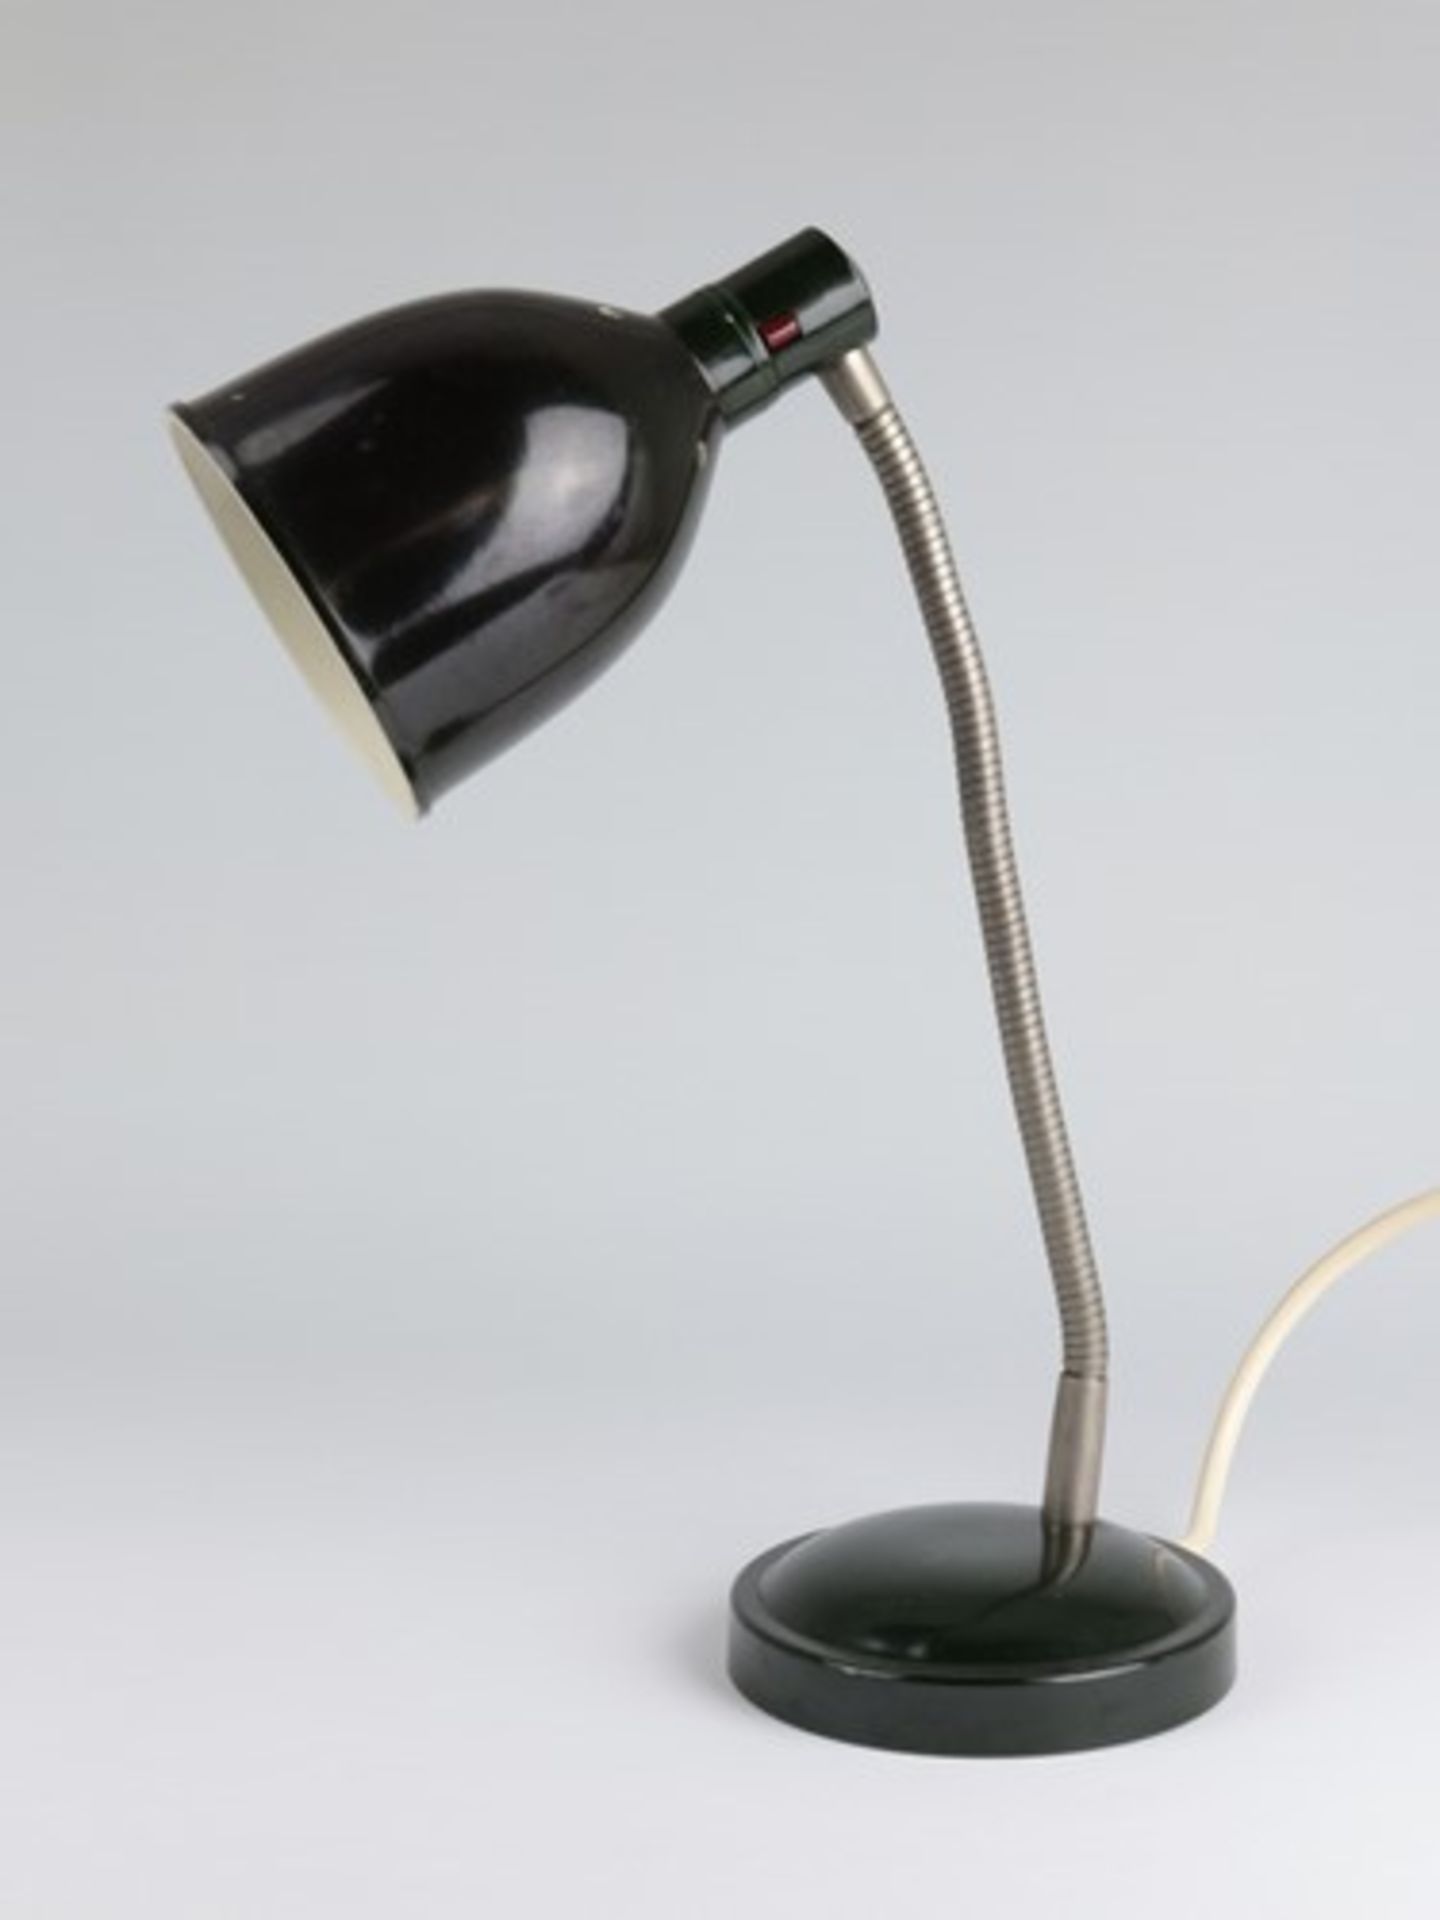 Tischlampeum 1920/30, Metall/Bakelit, dunkelgrün gefasst, einflammig, runder Stand, biegbarer - Image 2 of 5